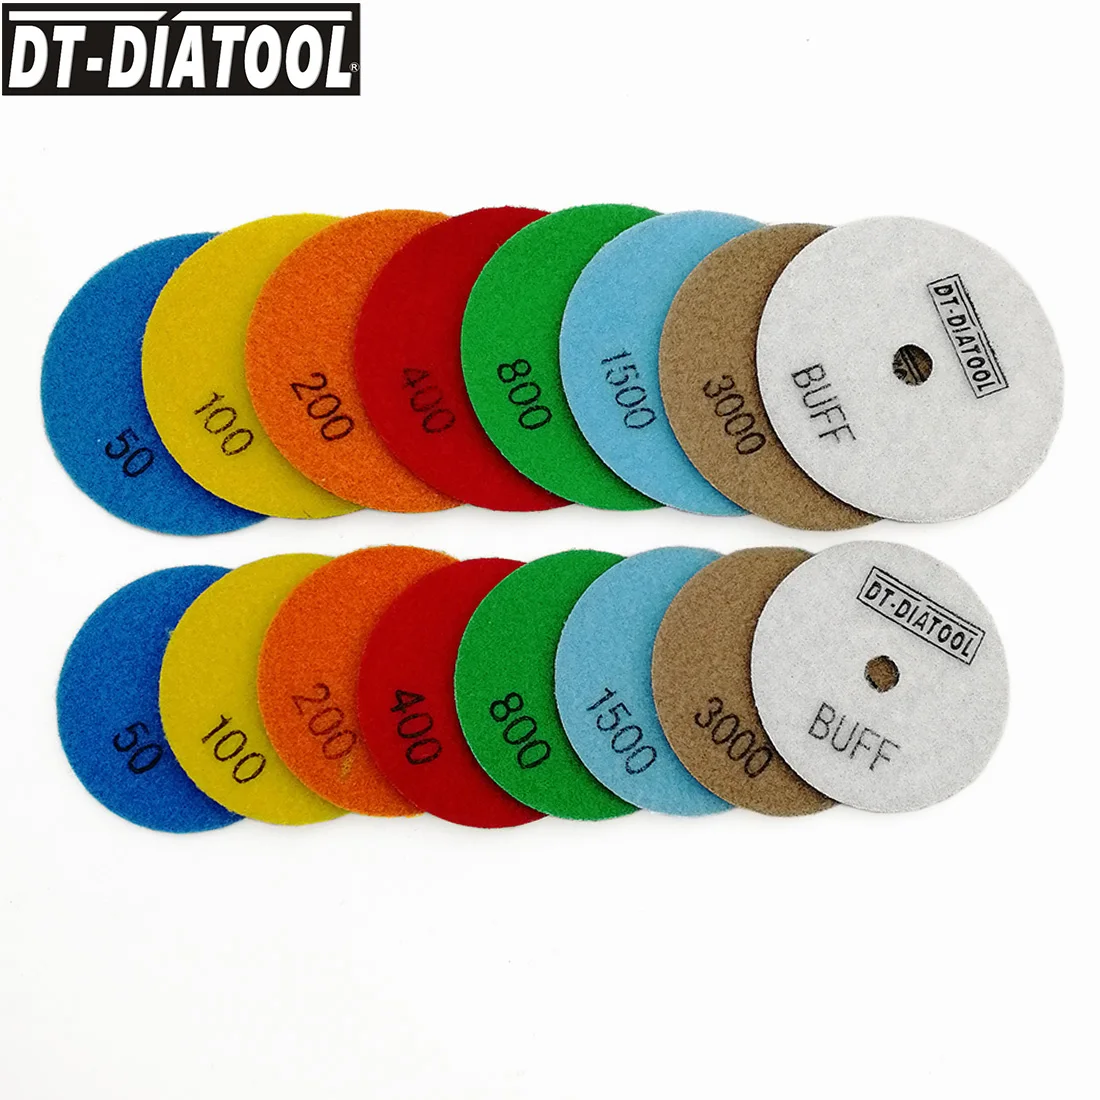 DT-DIATOOL 8 шт./компл. " /4" сухой алмазный Полировочный диск колодки шлифовальные диски для Гранит Мрамор бетонного камня шлифовальные диски ручной инструмент